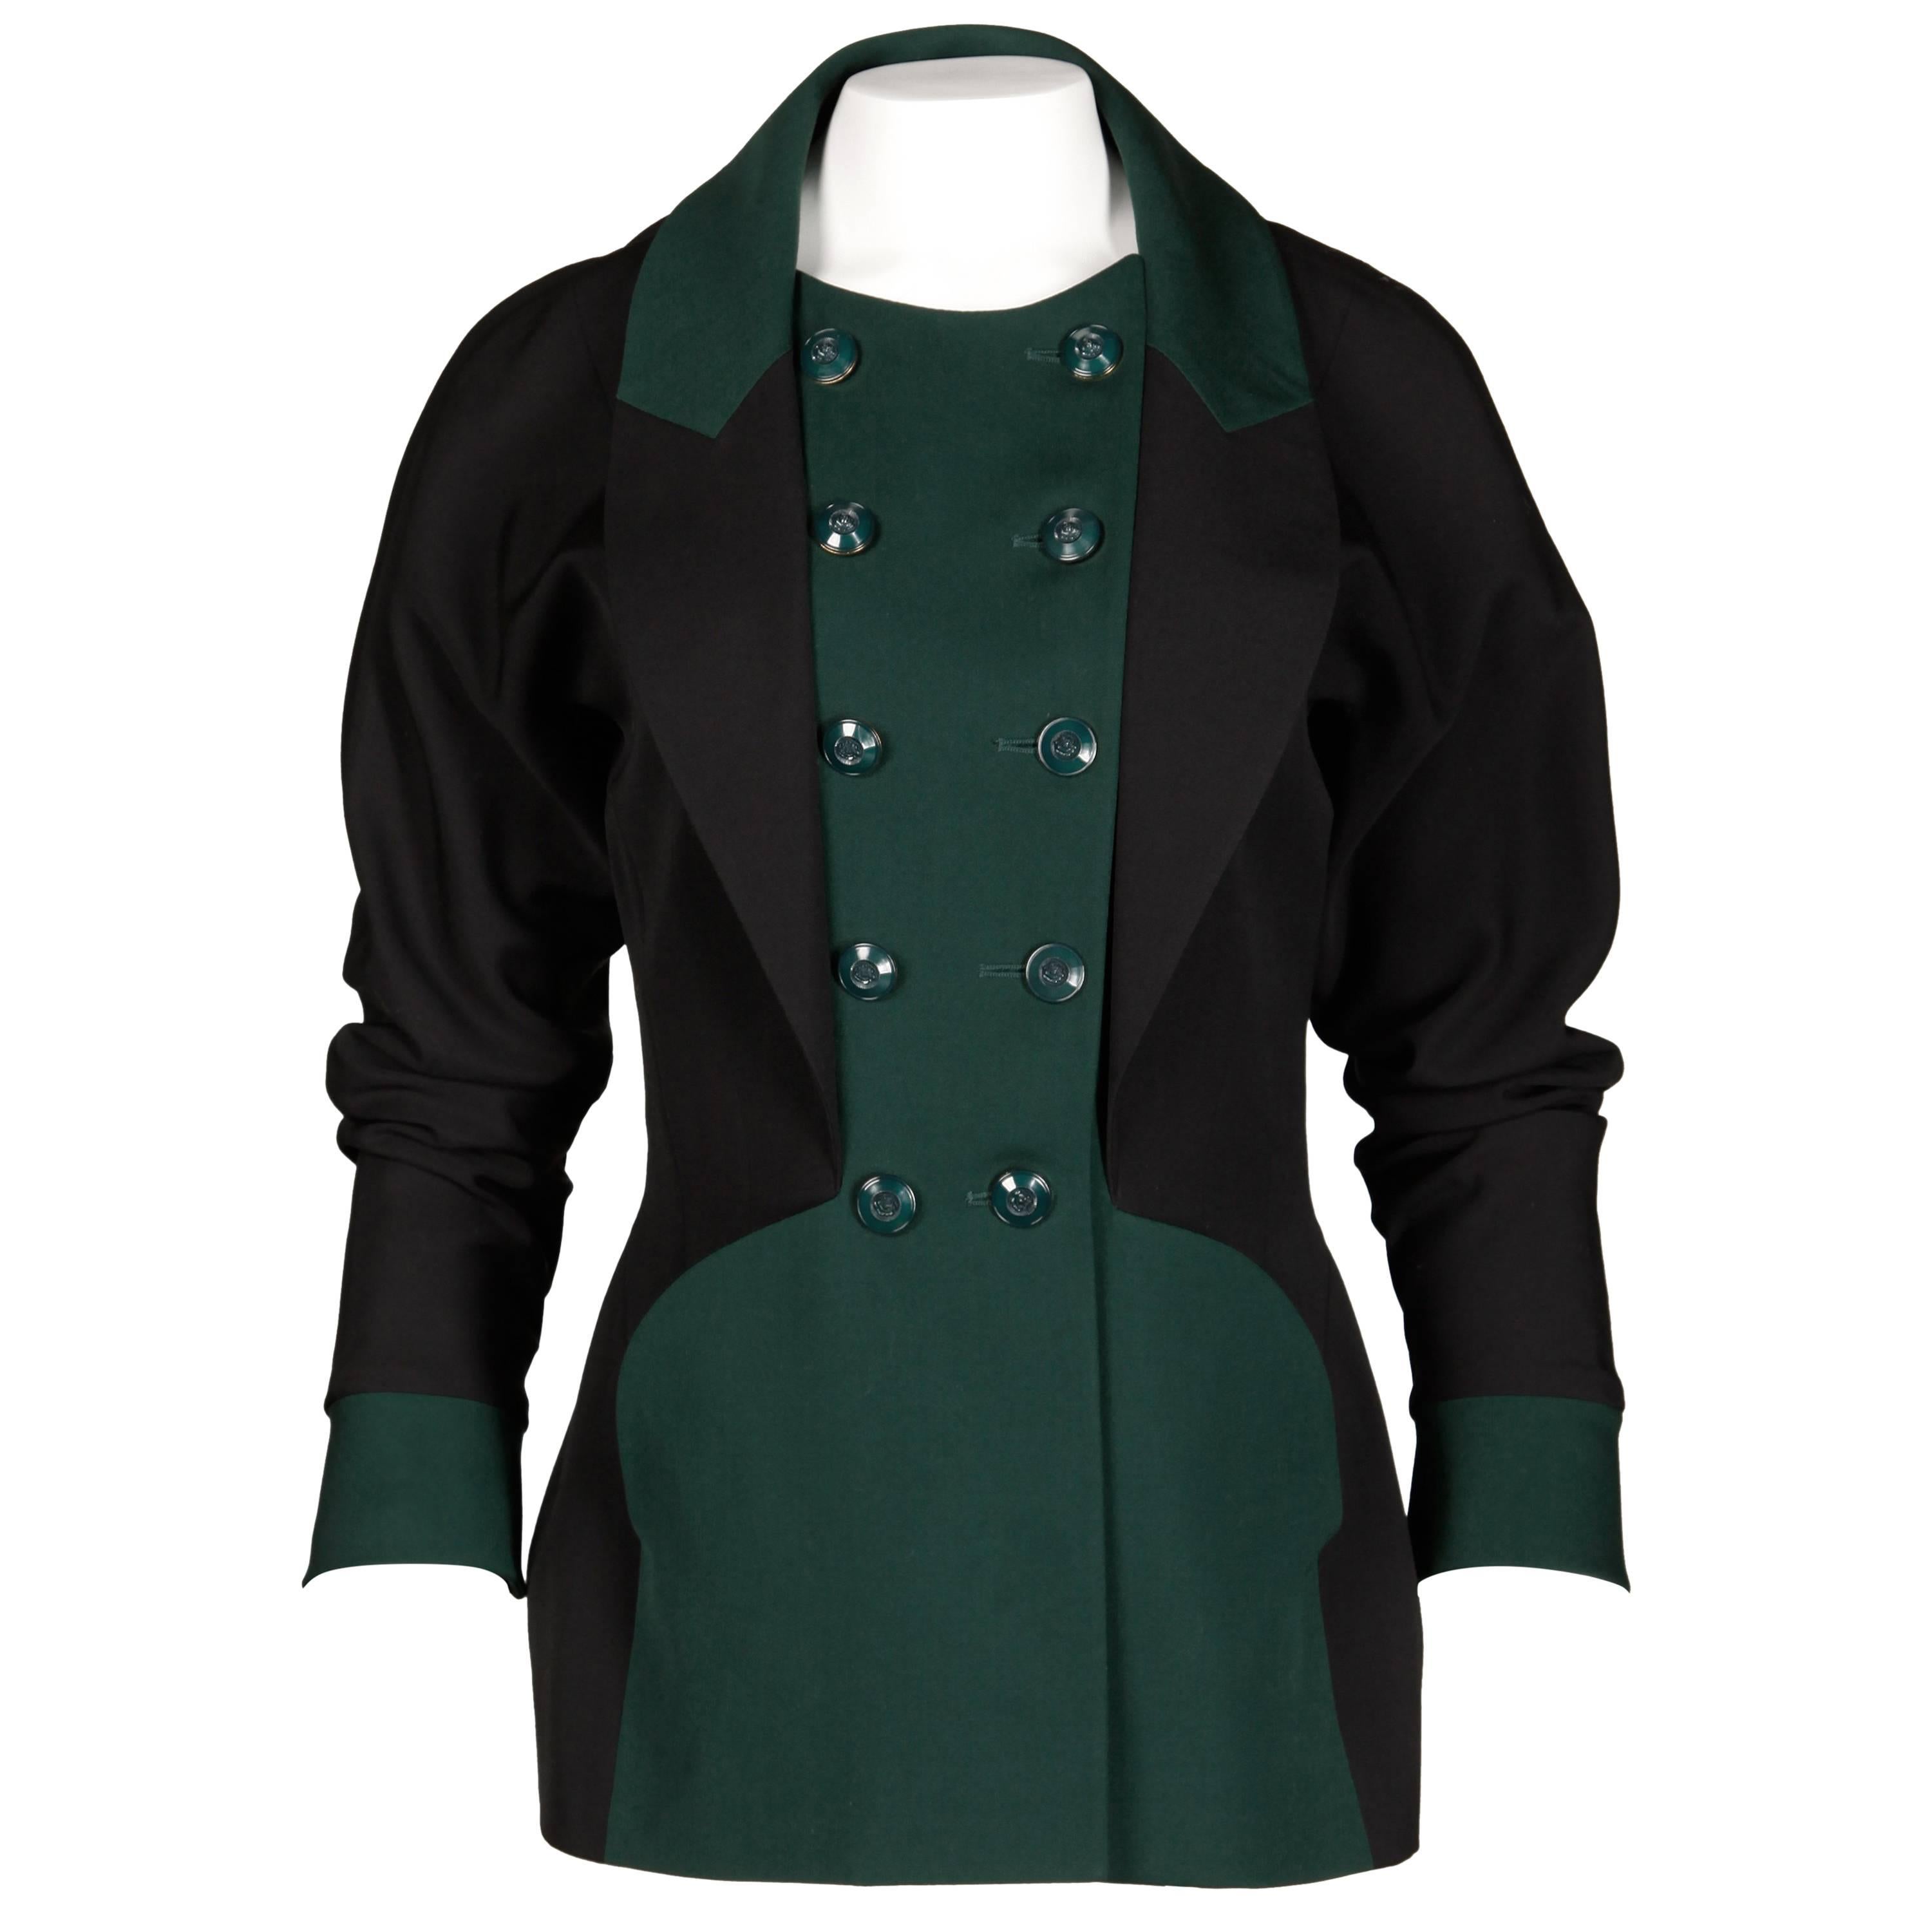 Karl Lagerfeld 1990s Vintage Green + Black Wool Military Jacket